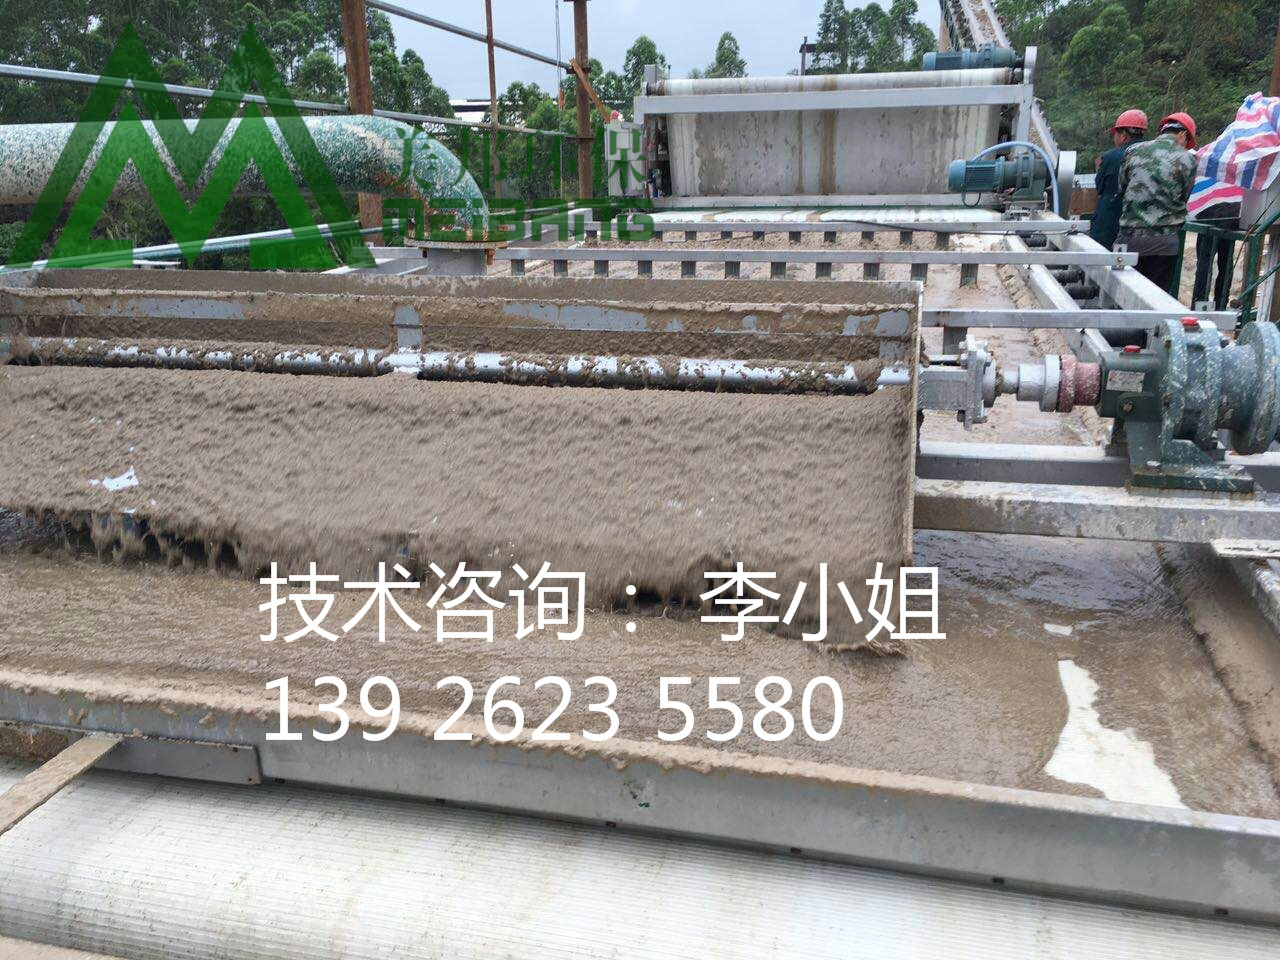 广州市石材厂泥浆脱水设备，美邦带式压滤厂家石材厂泥浆脱水设备，美邦带式压滤